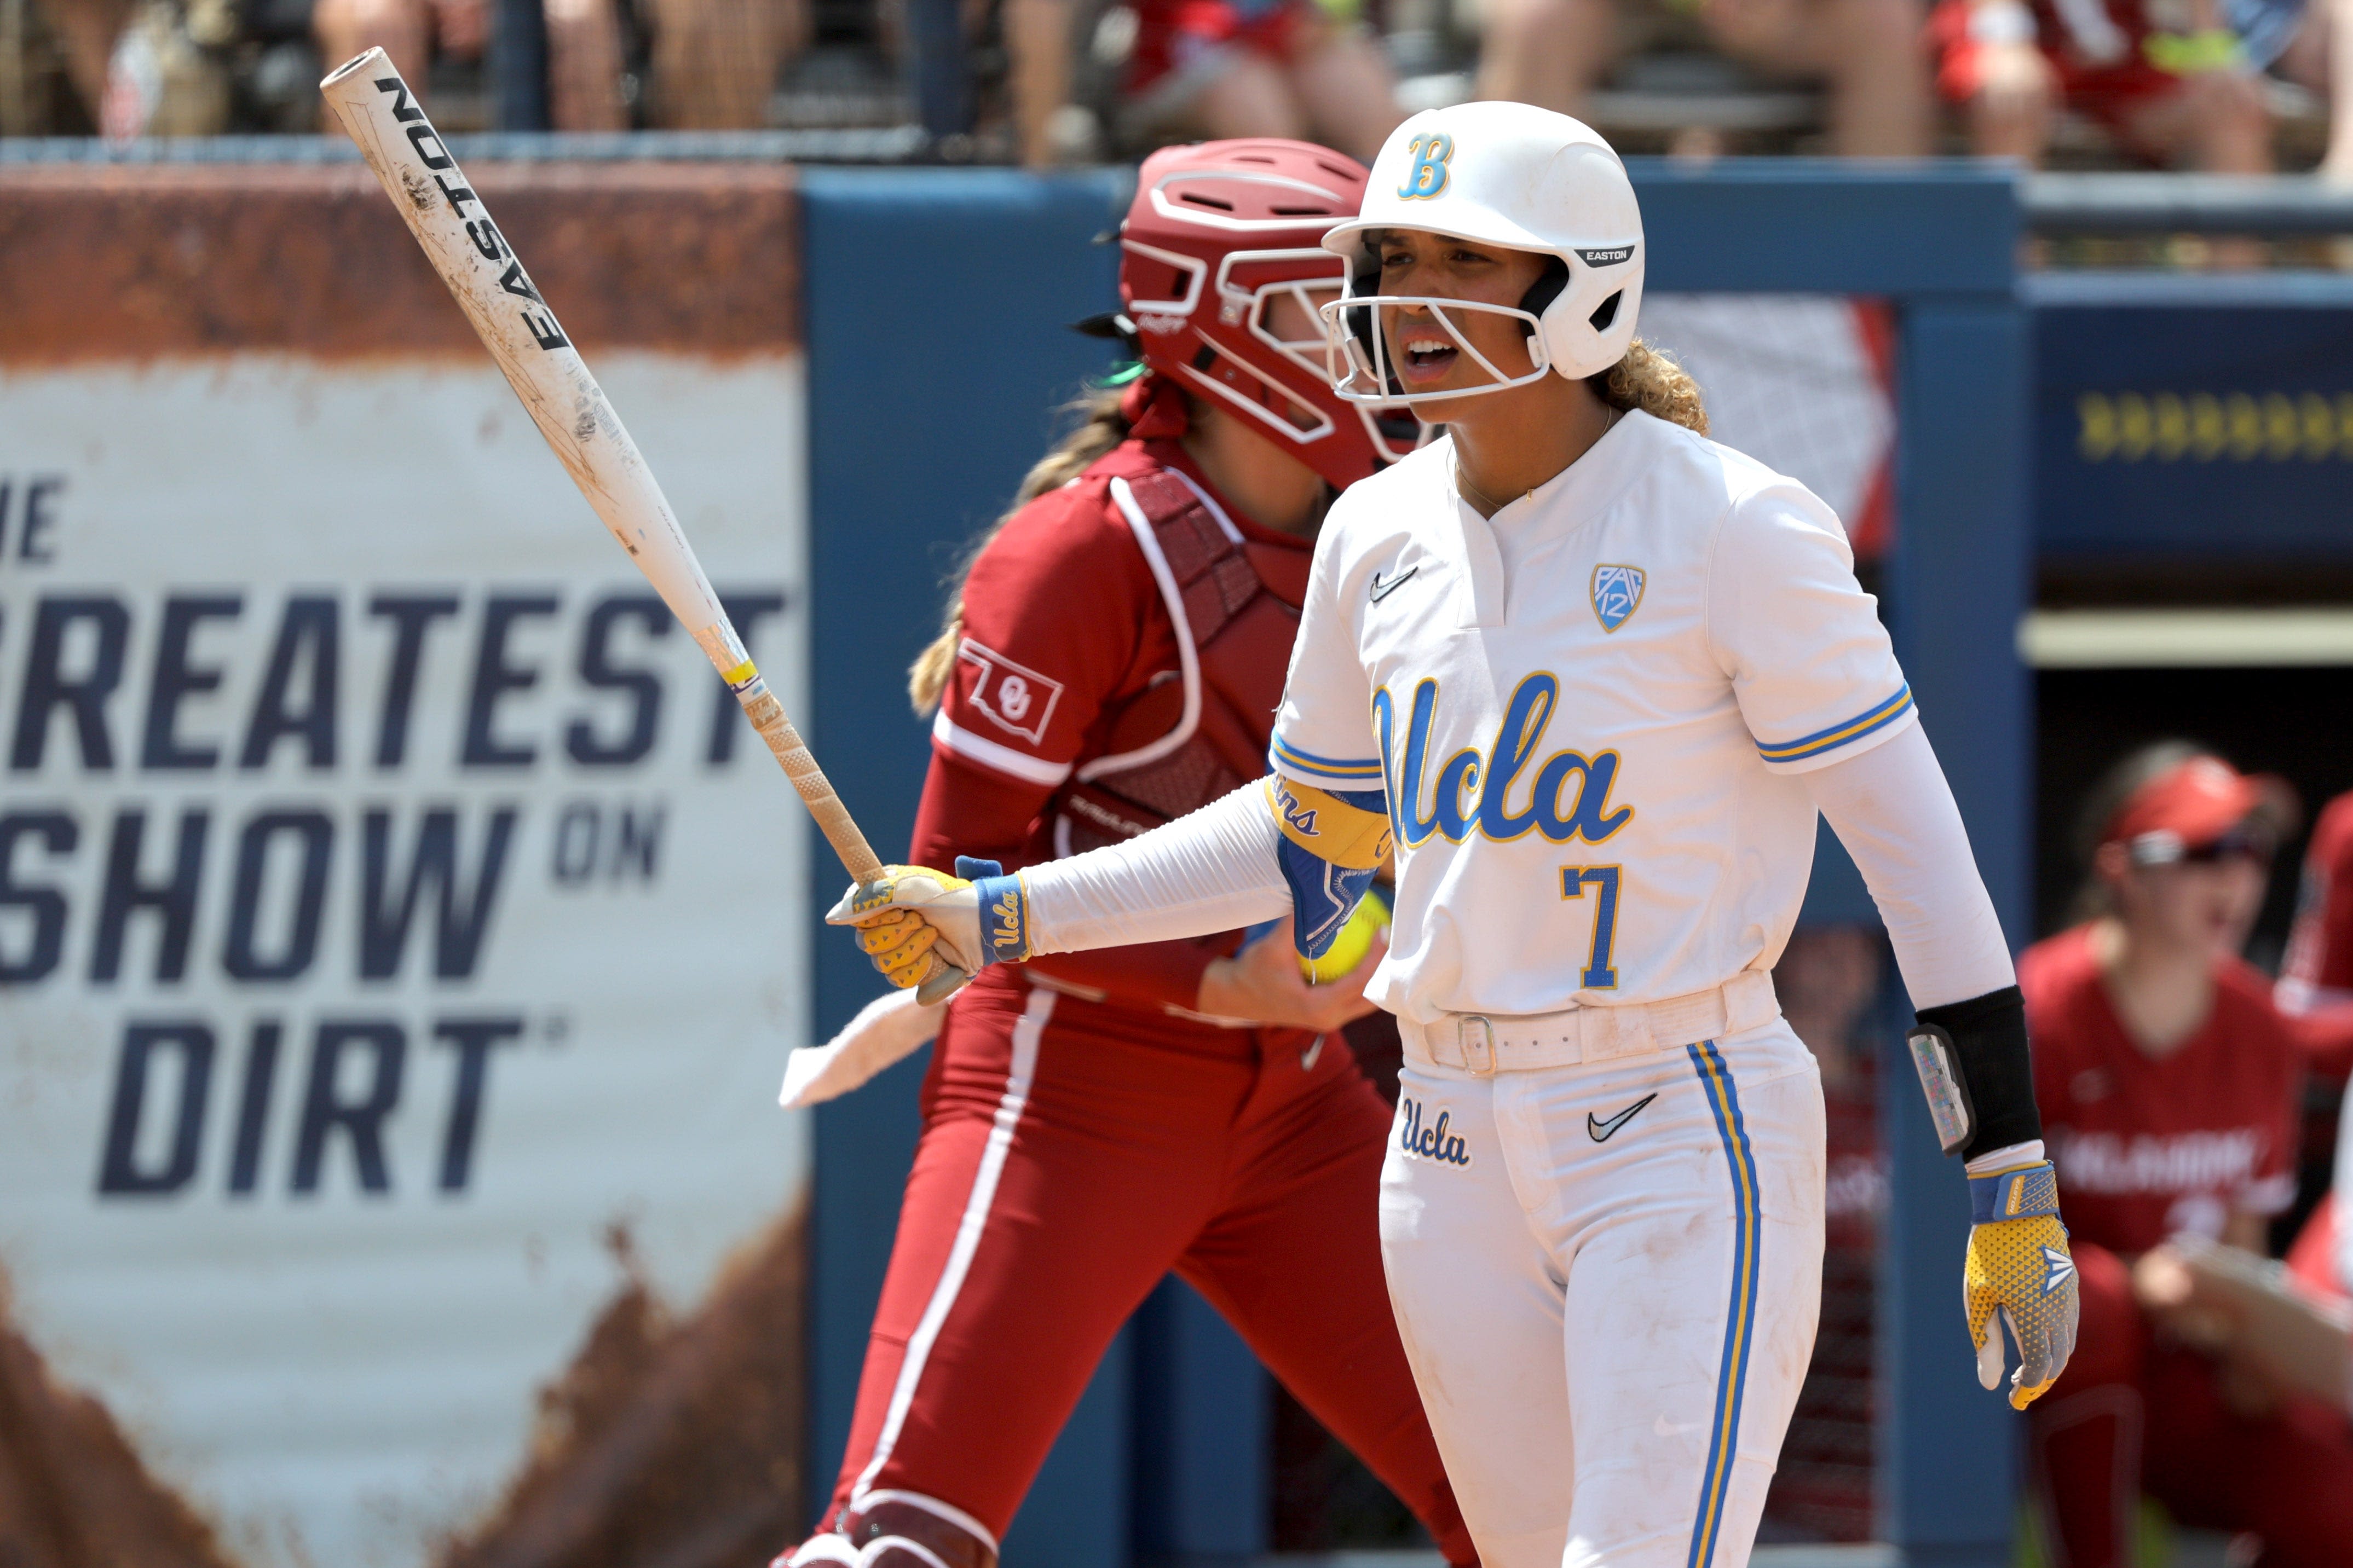 Inside WCWS reunion of OU softball star Tiare Jennings, UCLA's Maya Brady